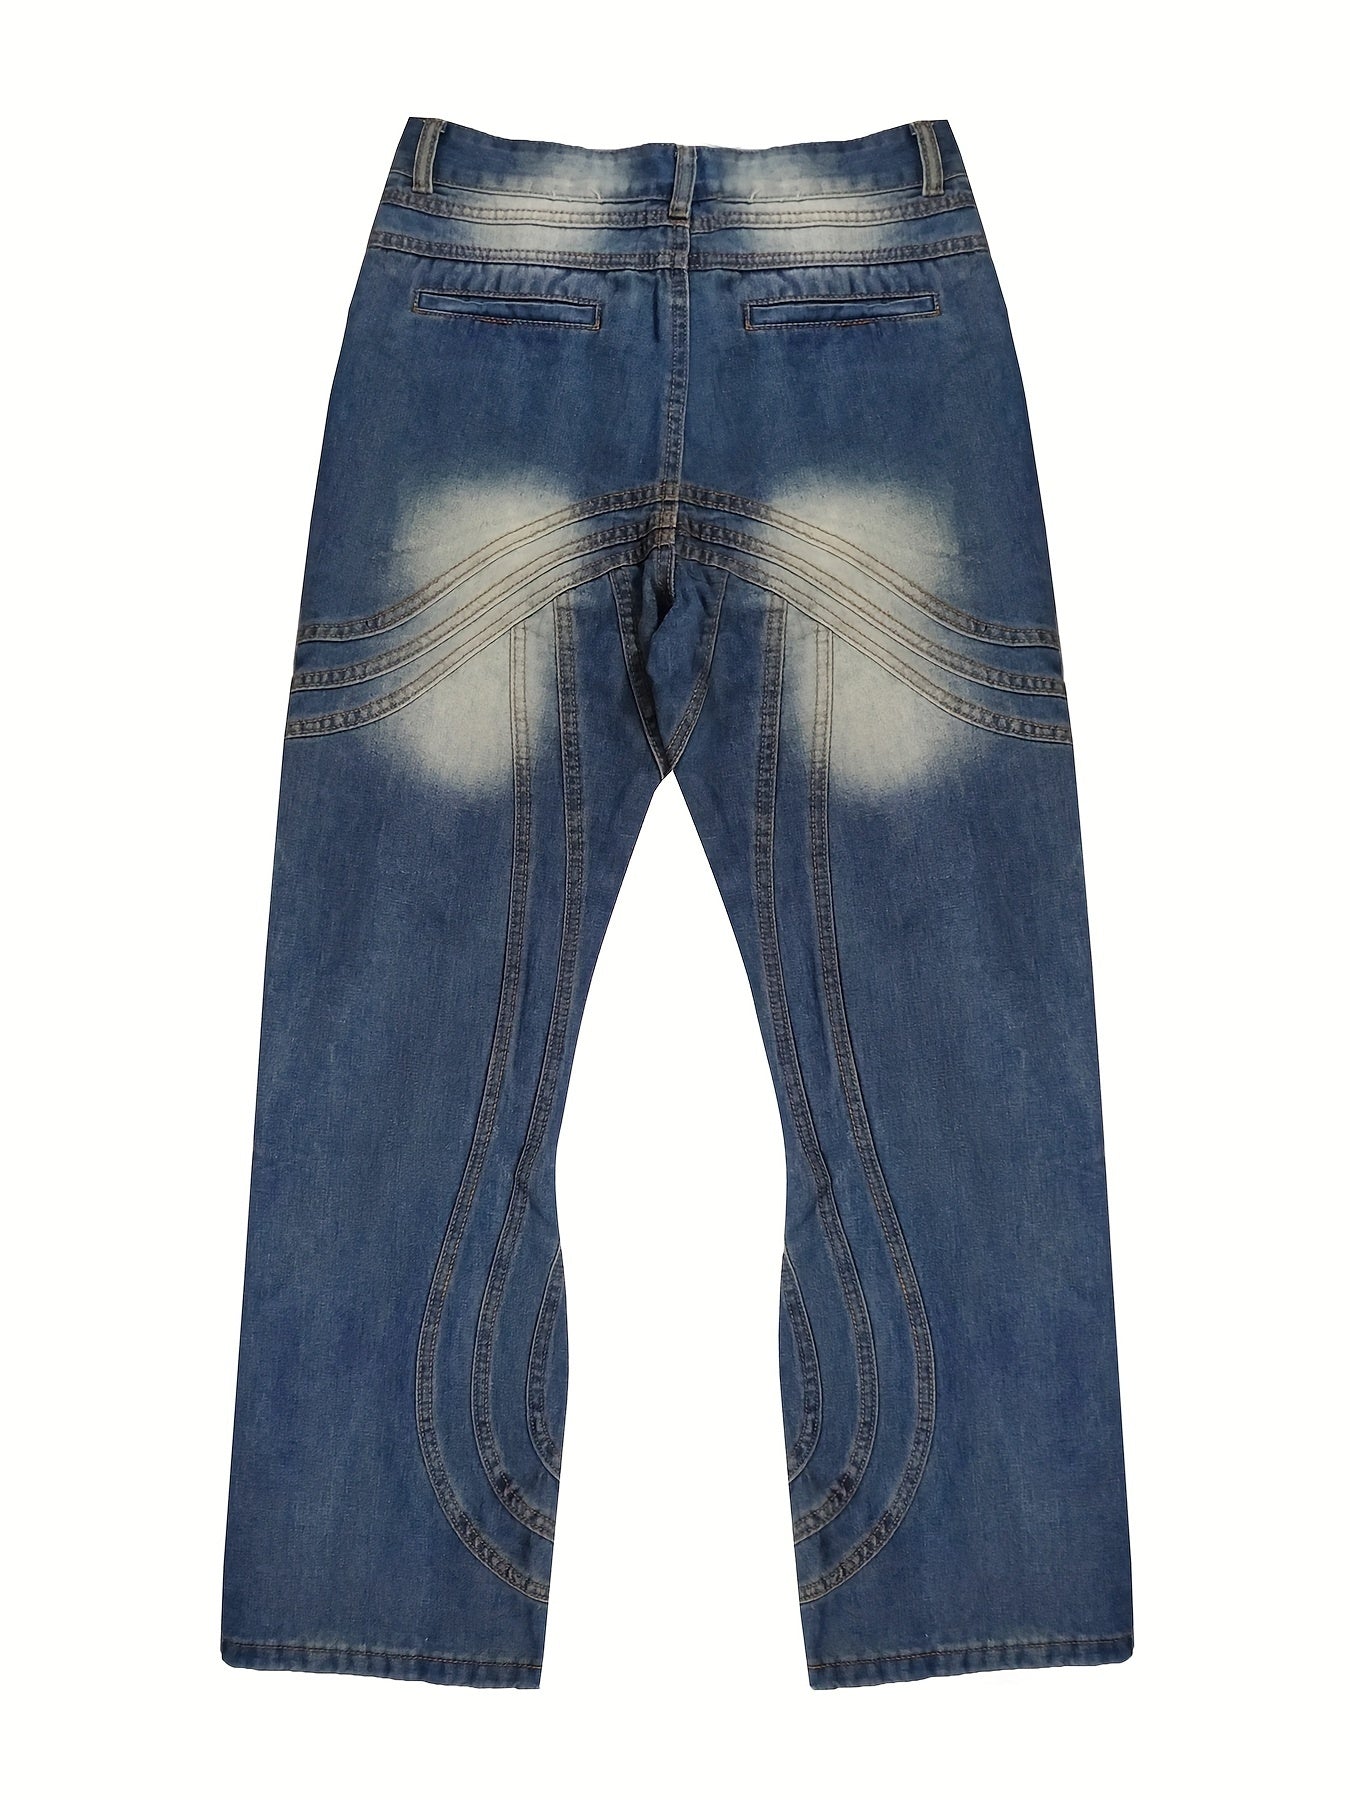 Unique Design Baggy Jeans